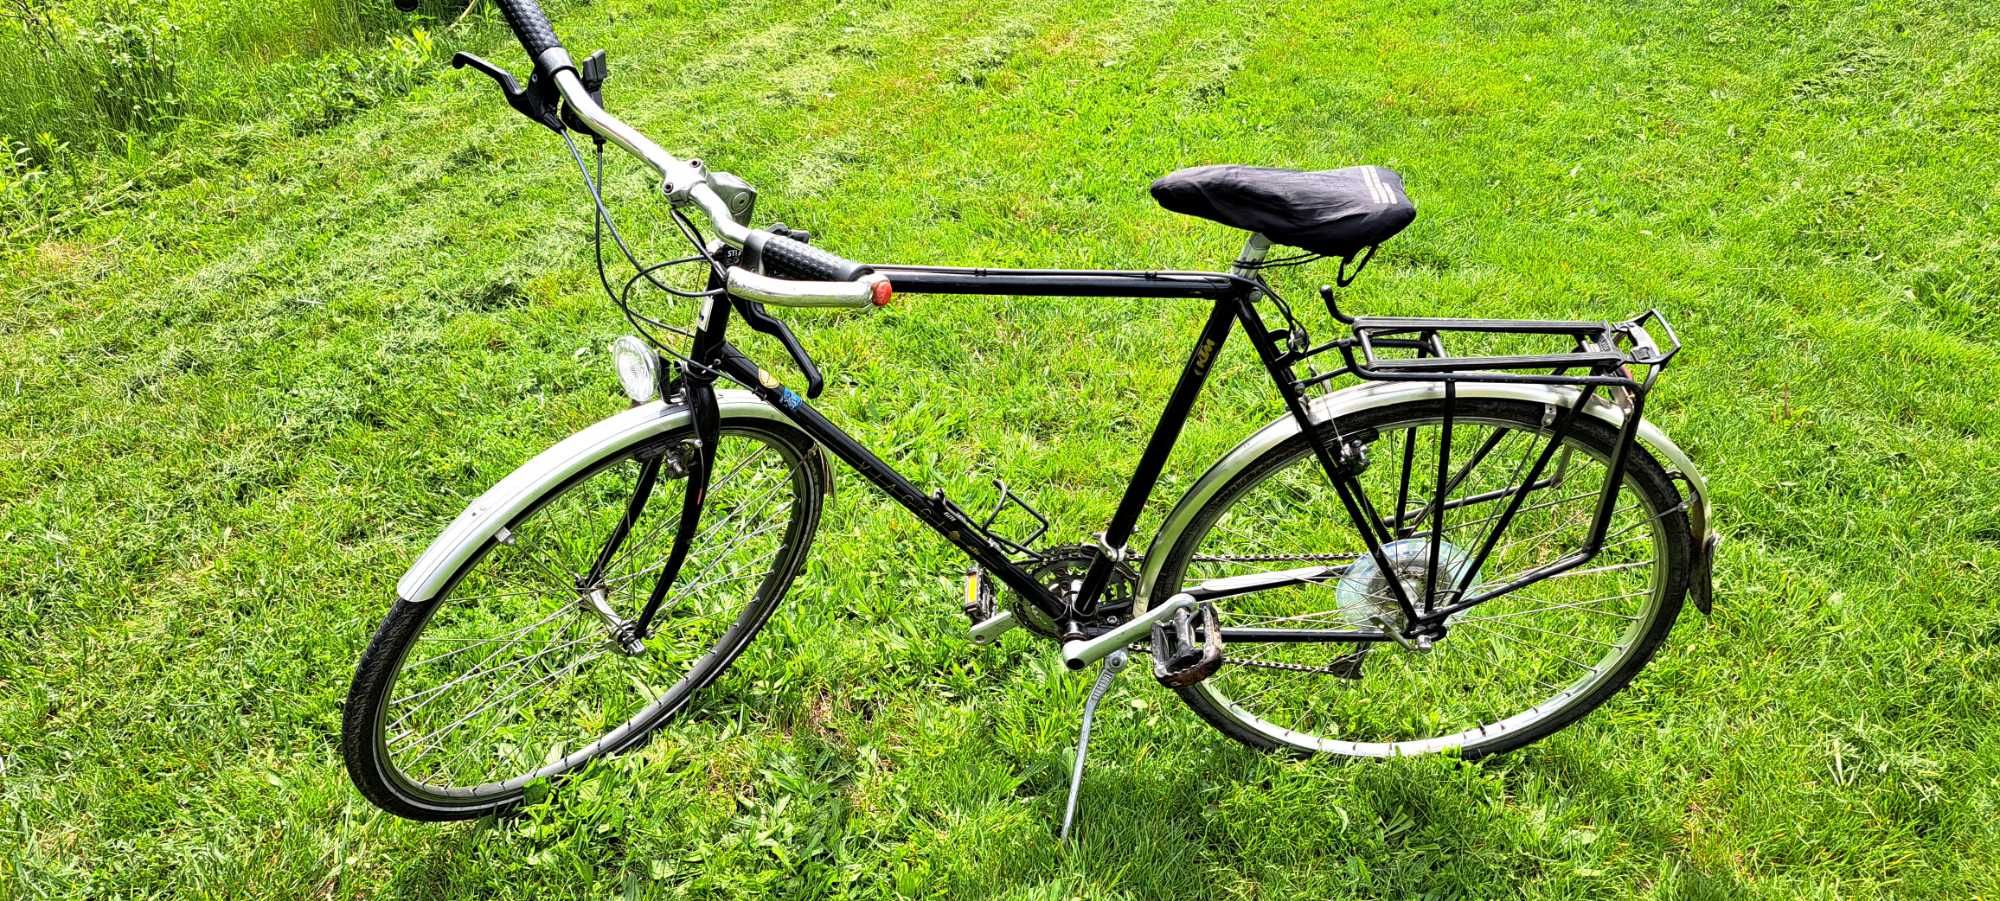 Bicicleta KTM Viaggio XL 58